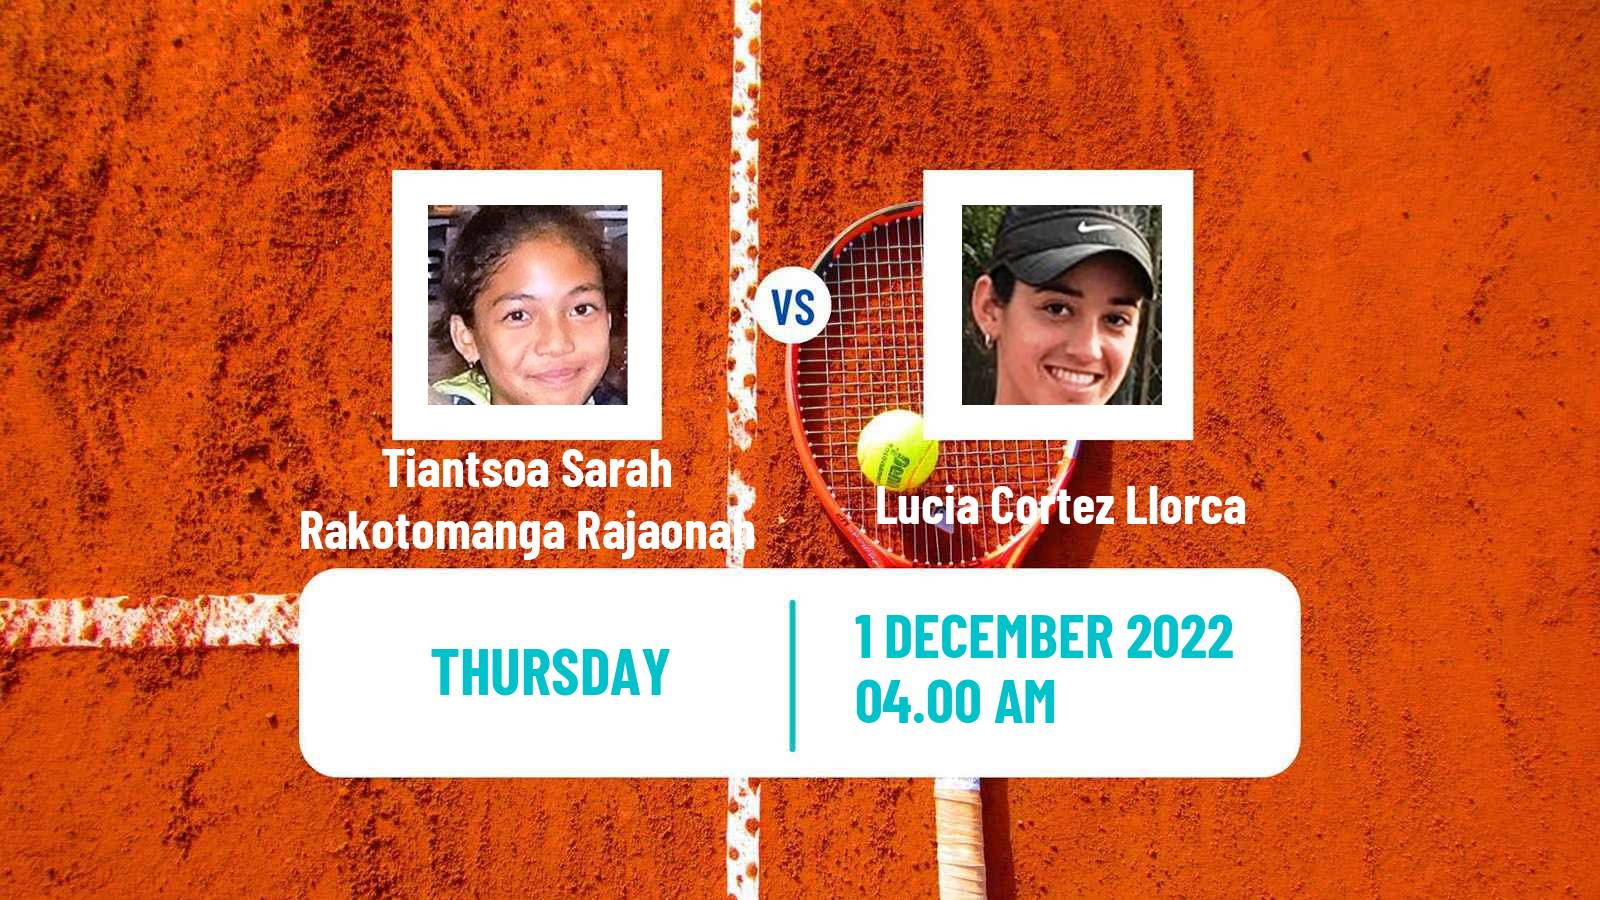 Tennis ITF Tournaments Tiantsoa Sarah Rakotomanga Rajaonah - Lucia Cortez Llorca